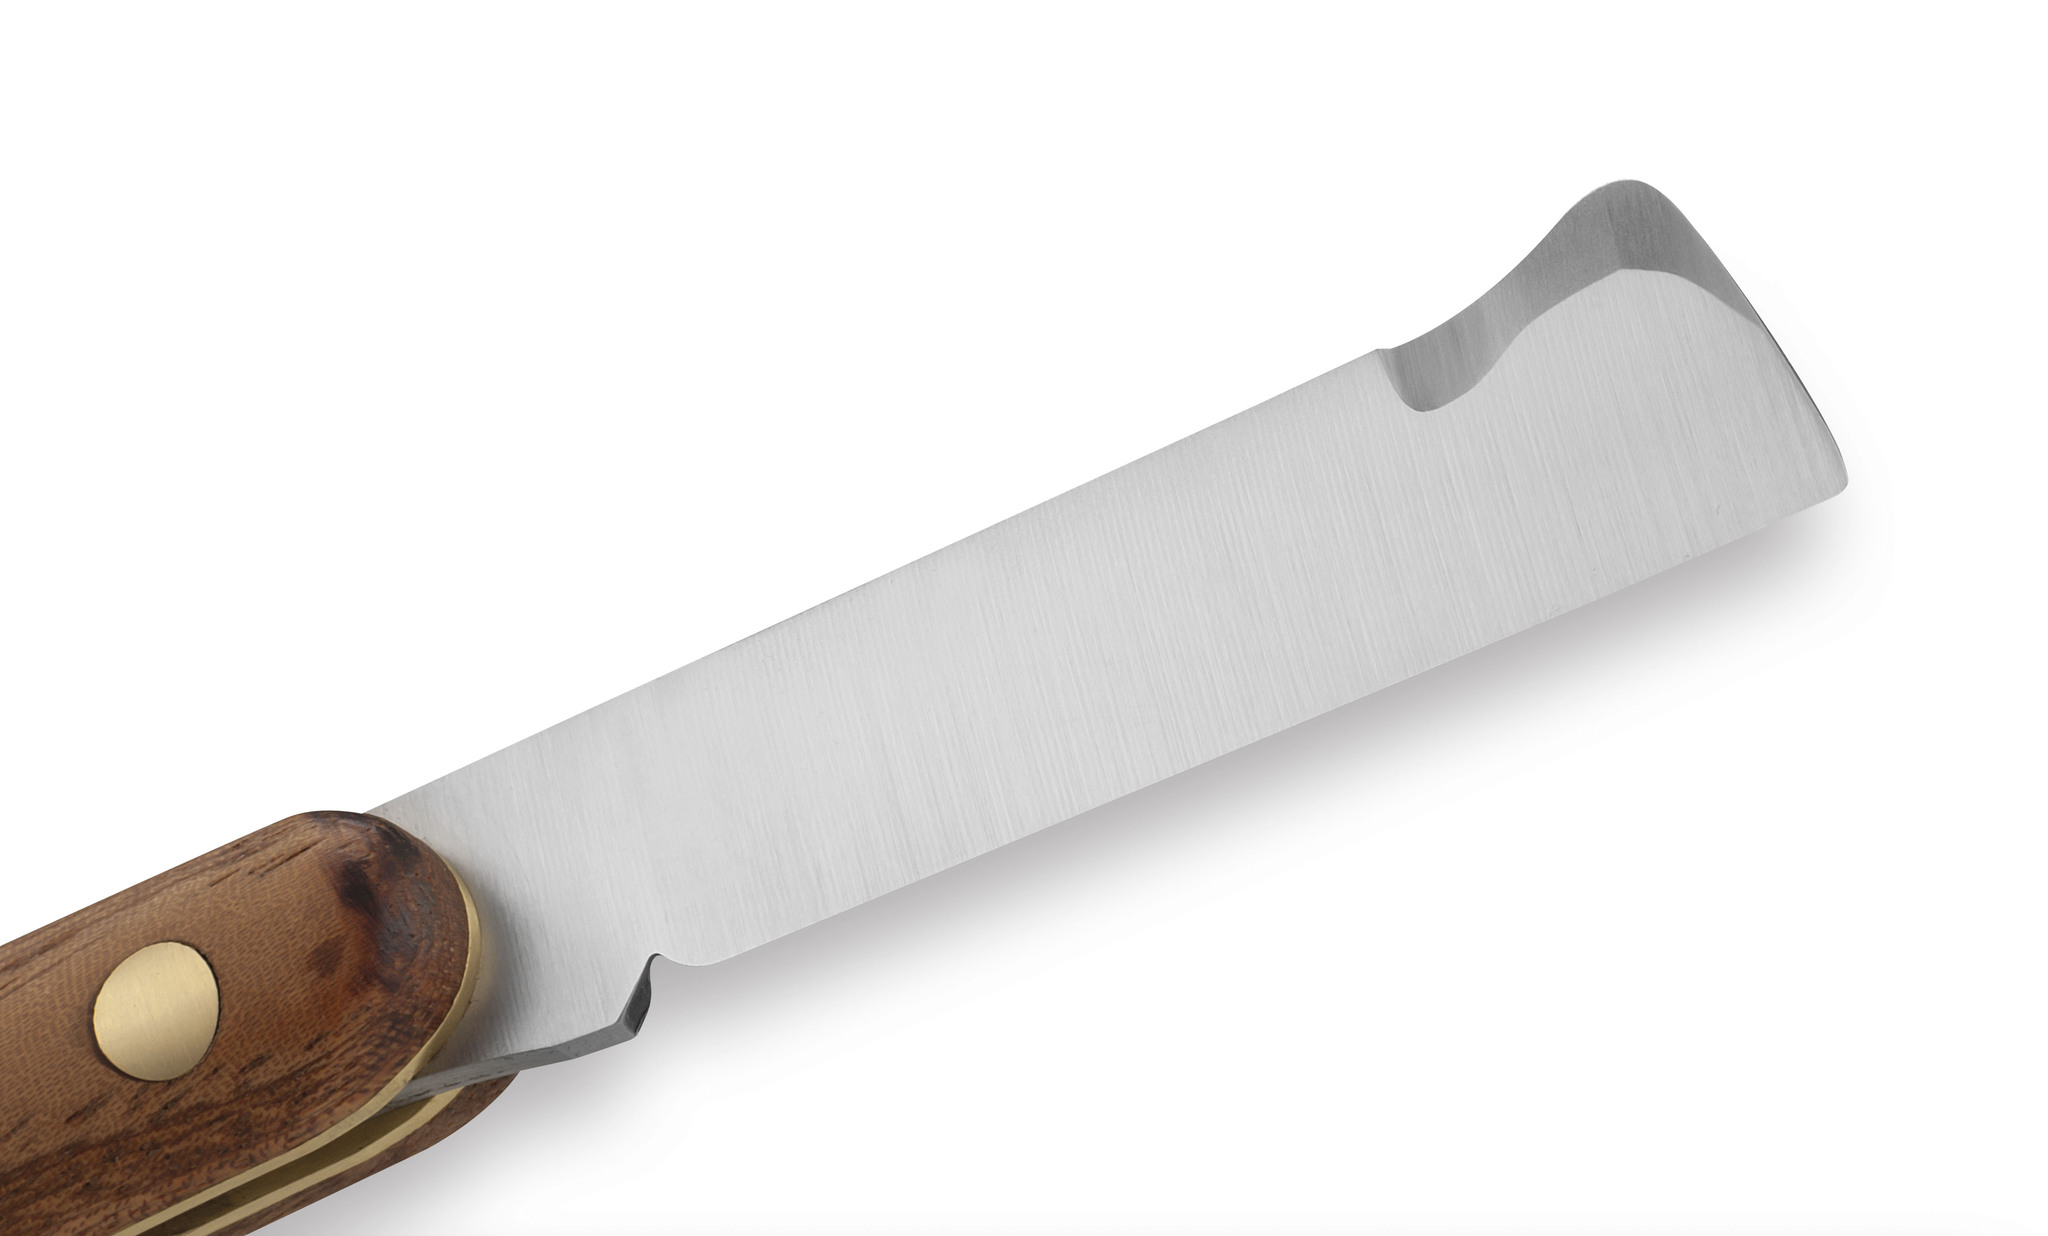 Купить хороший нож от производителя с бесплатной доставкой по всей России!